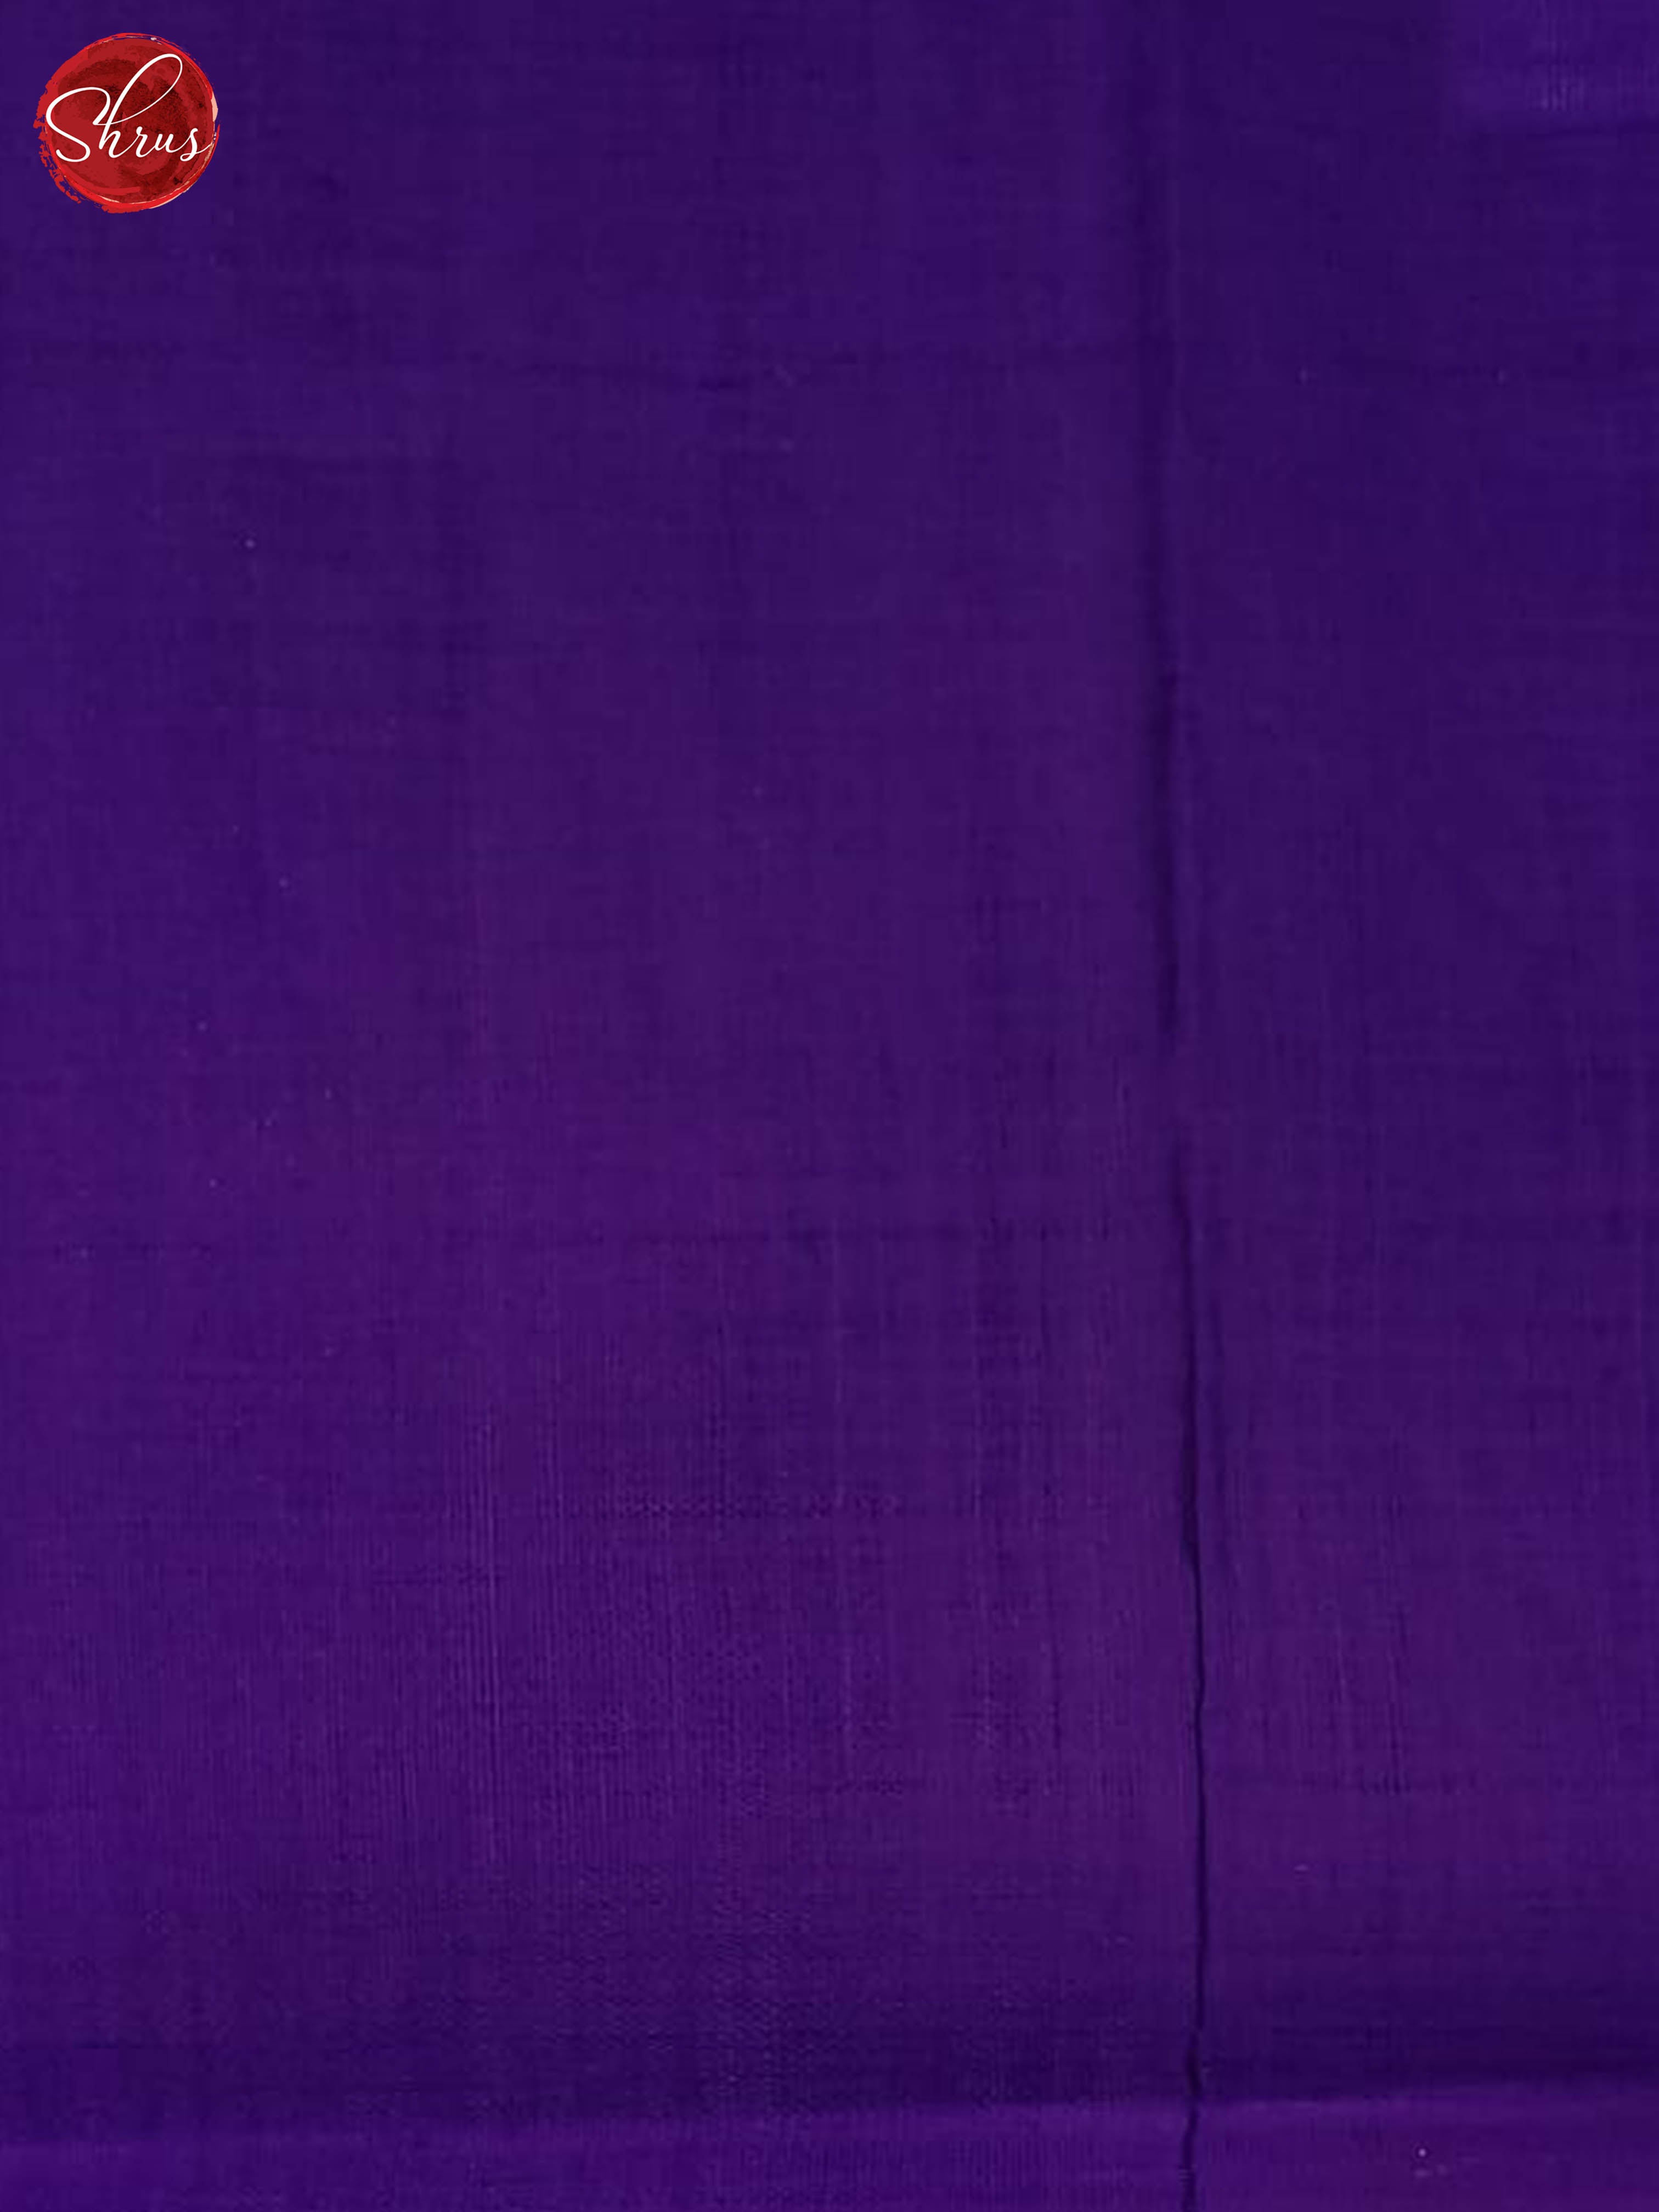 cream and violet-Silk cotton saree - Shop on ShrusEternity.com